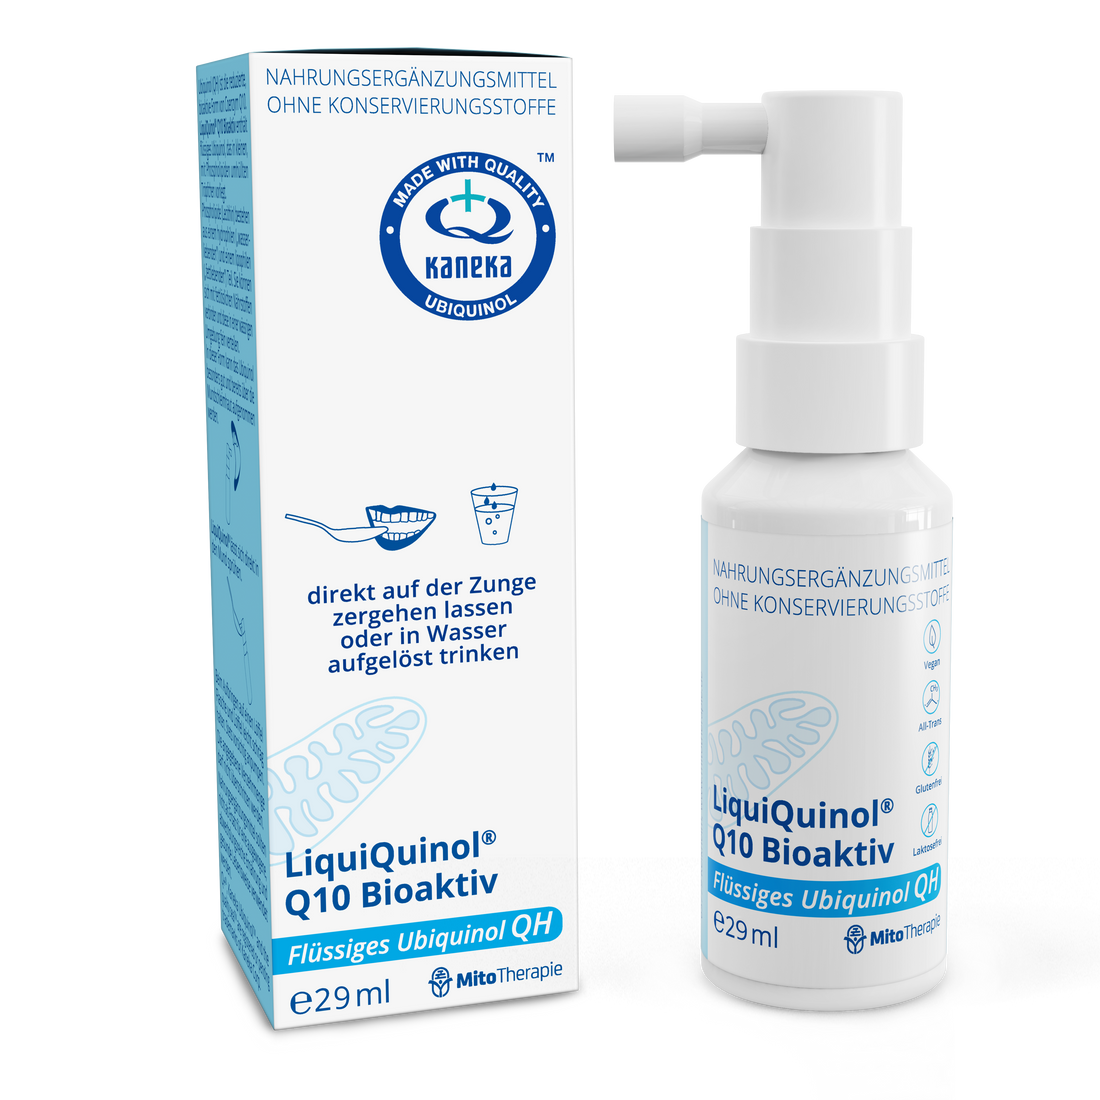 LiquiQuinol® Q10 Bioaktiv – ubiquinol liquide